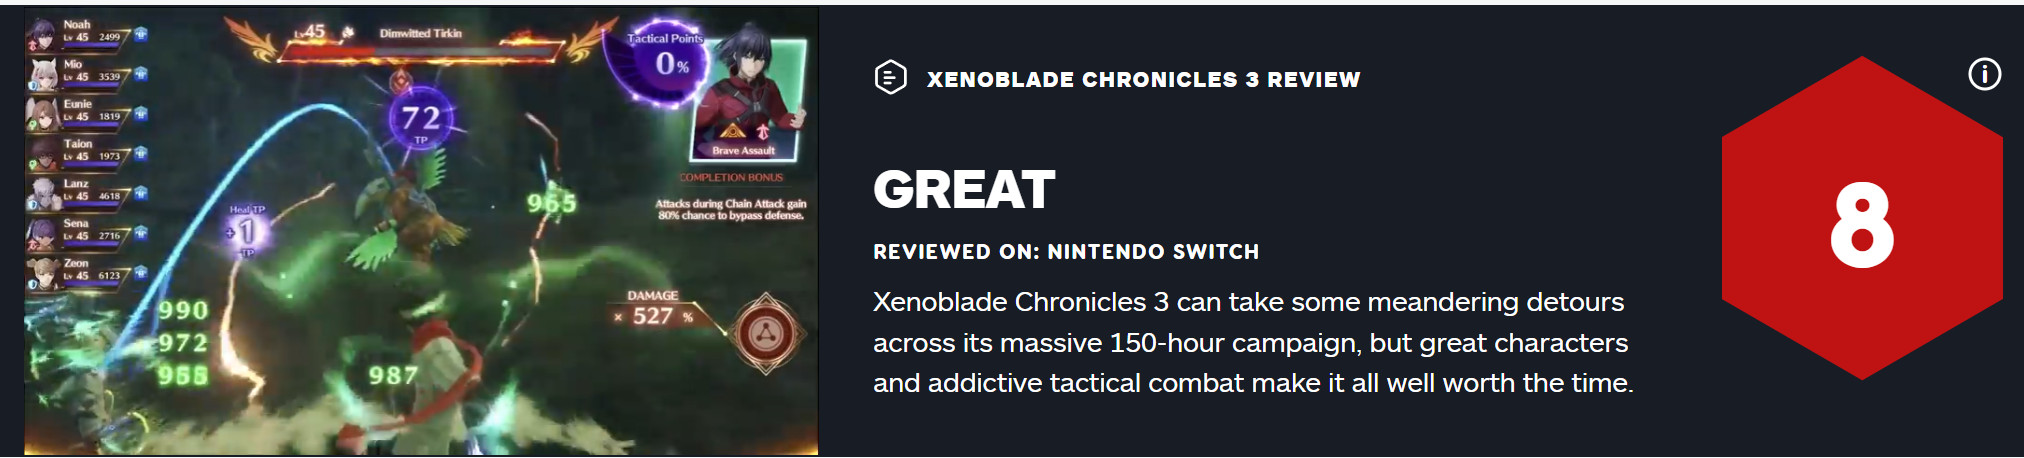 《异度神剑3》获IGN8分评价 拥有出色的角色及战术体系